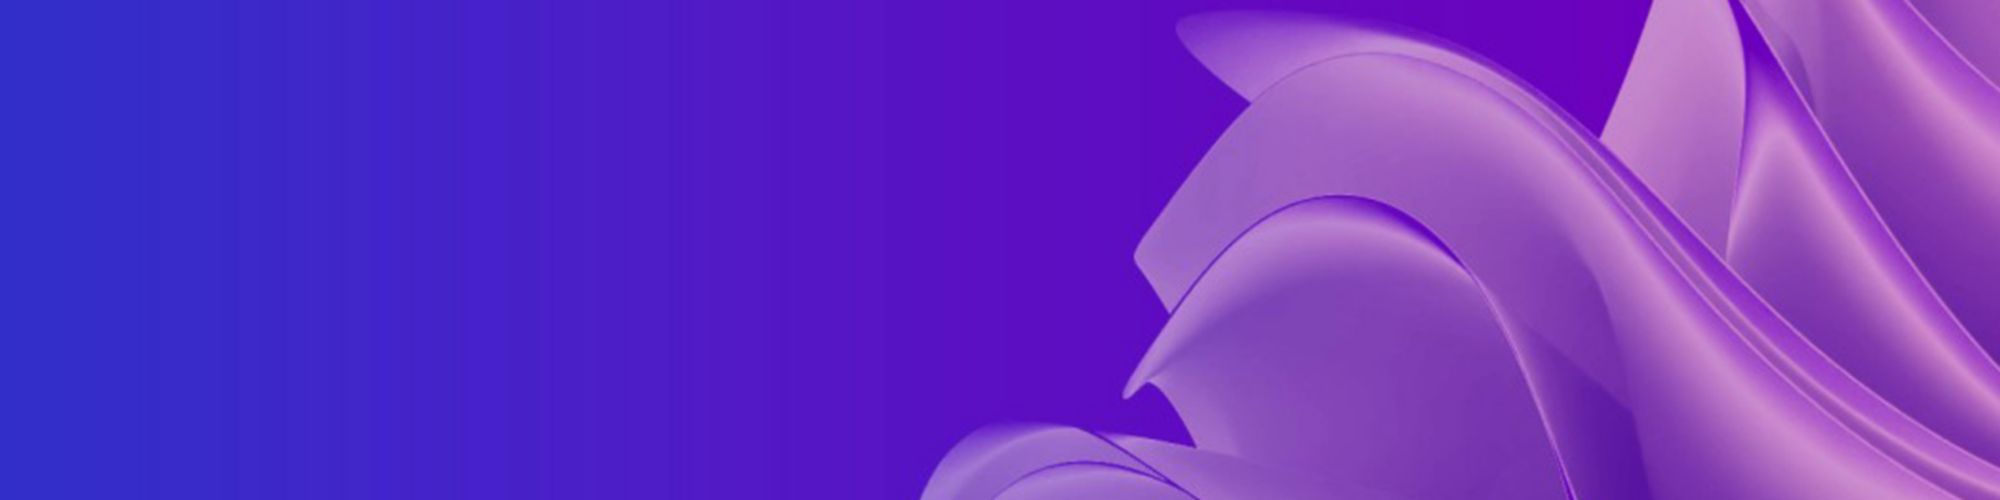 purple-folds-digital-texture